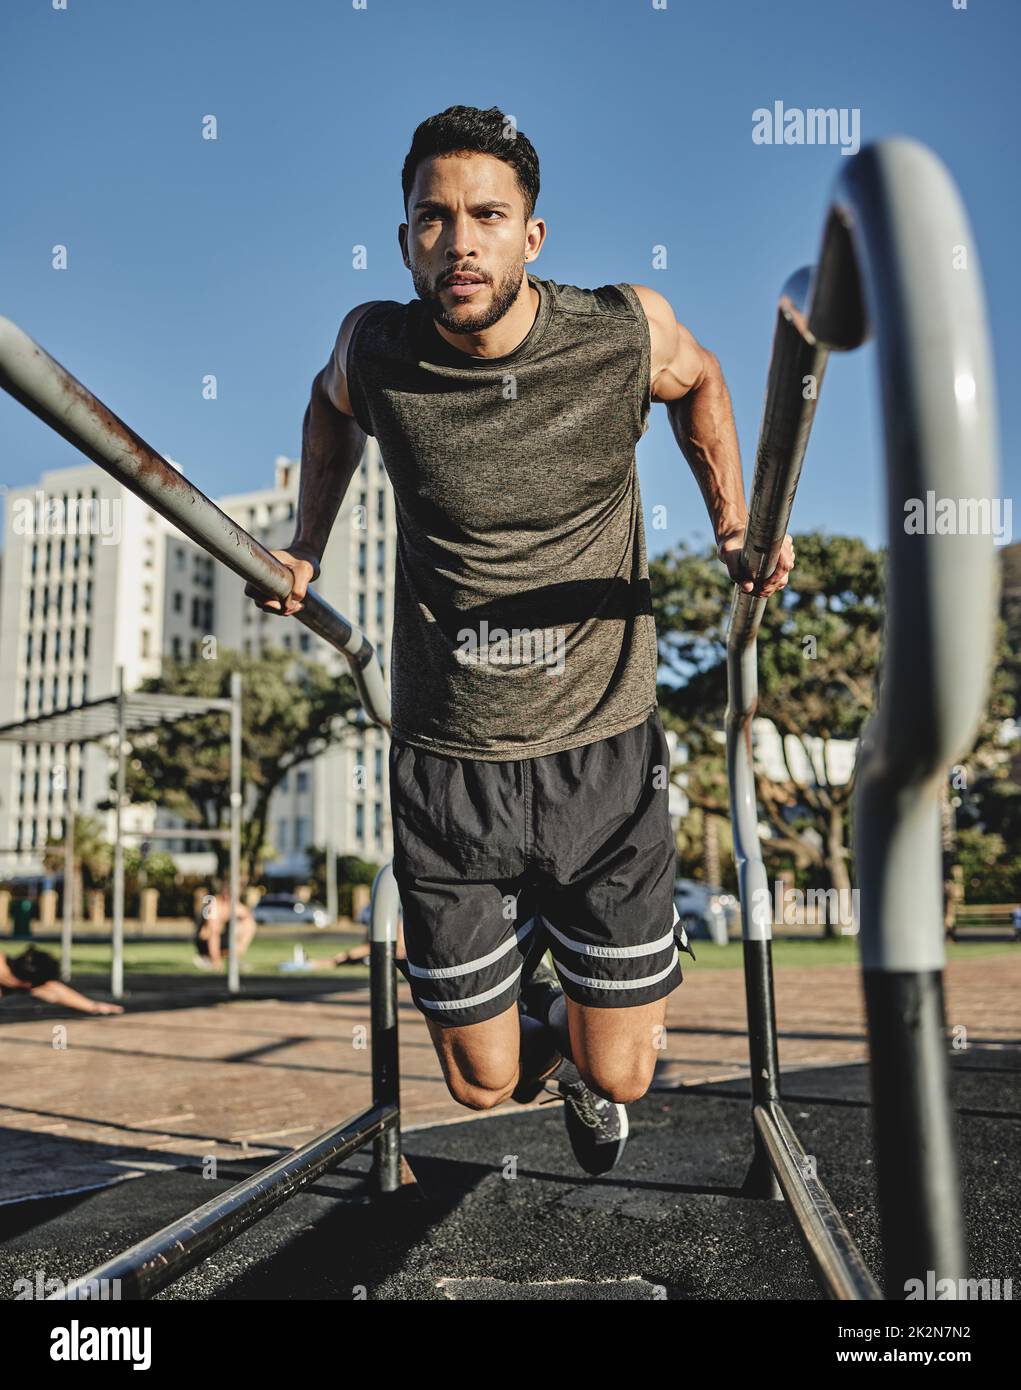 Ein wenig Aufwand geht einen langen Weg. Aufnahme eines muskulösen jungen Mannes, der in einem Calisthenics-Park trainiert. Stockfoto